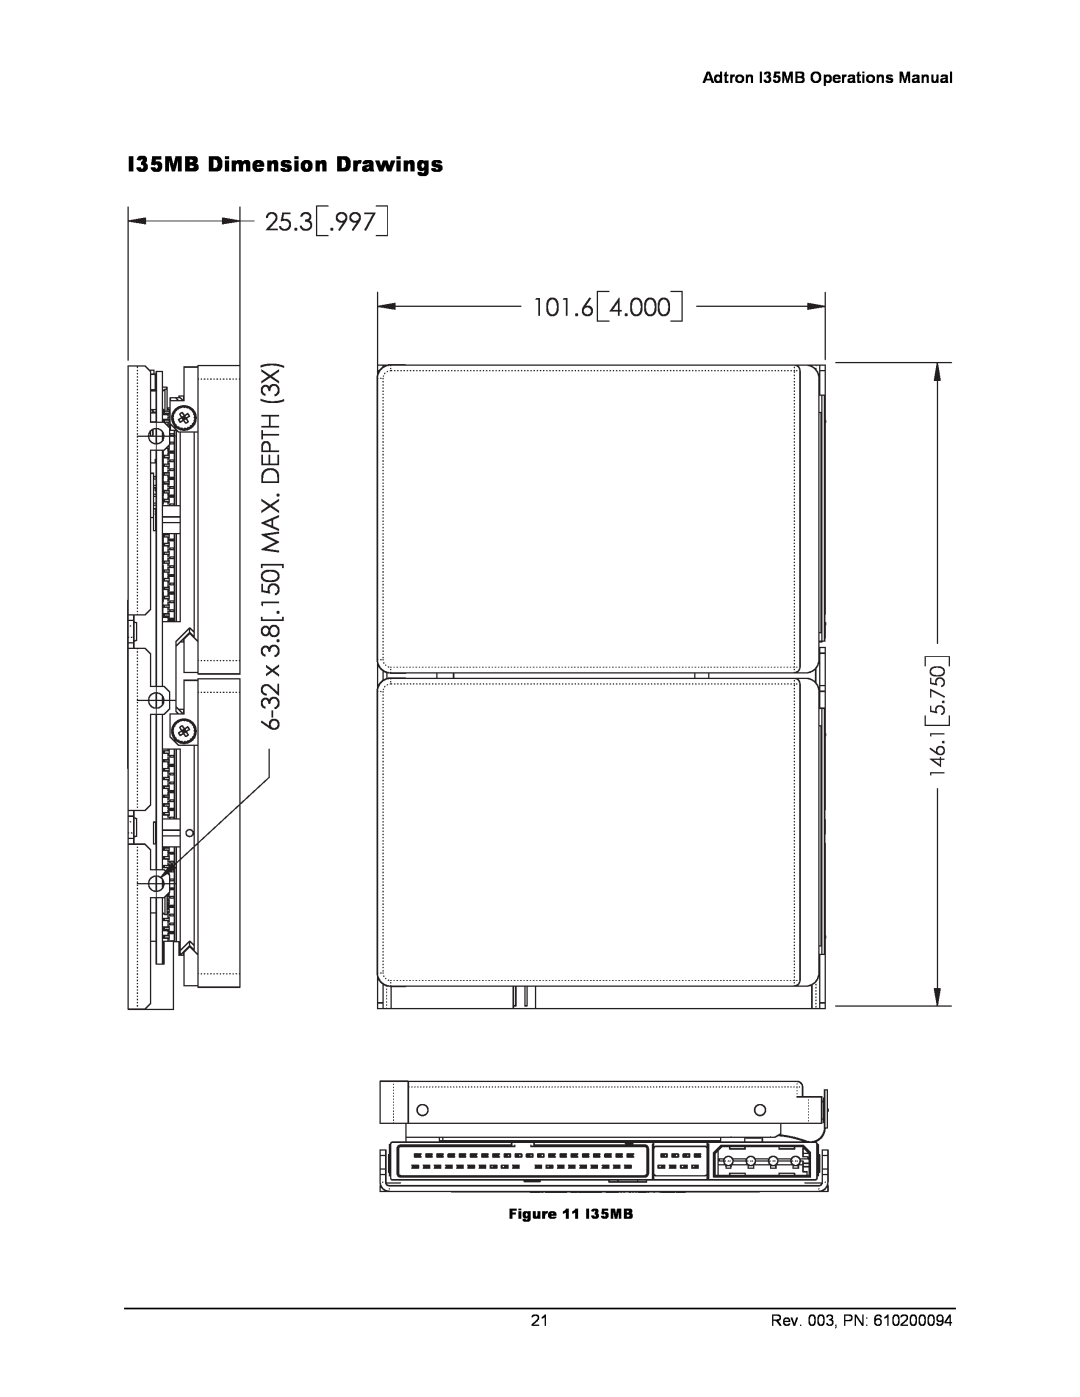 ADTRAN 610200094 manual I35MB Dimension Drawings, 25.3, 146.1, Rev. 003, PN, 6-32x 3.8.150 MAX. DEPTH 